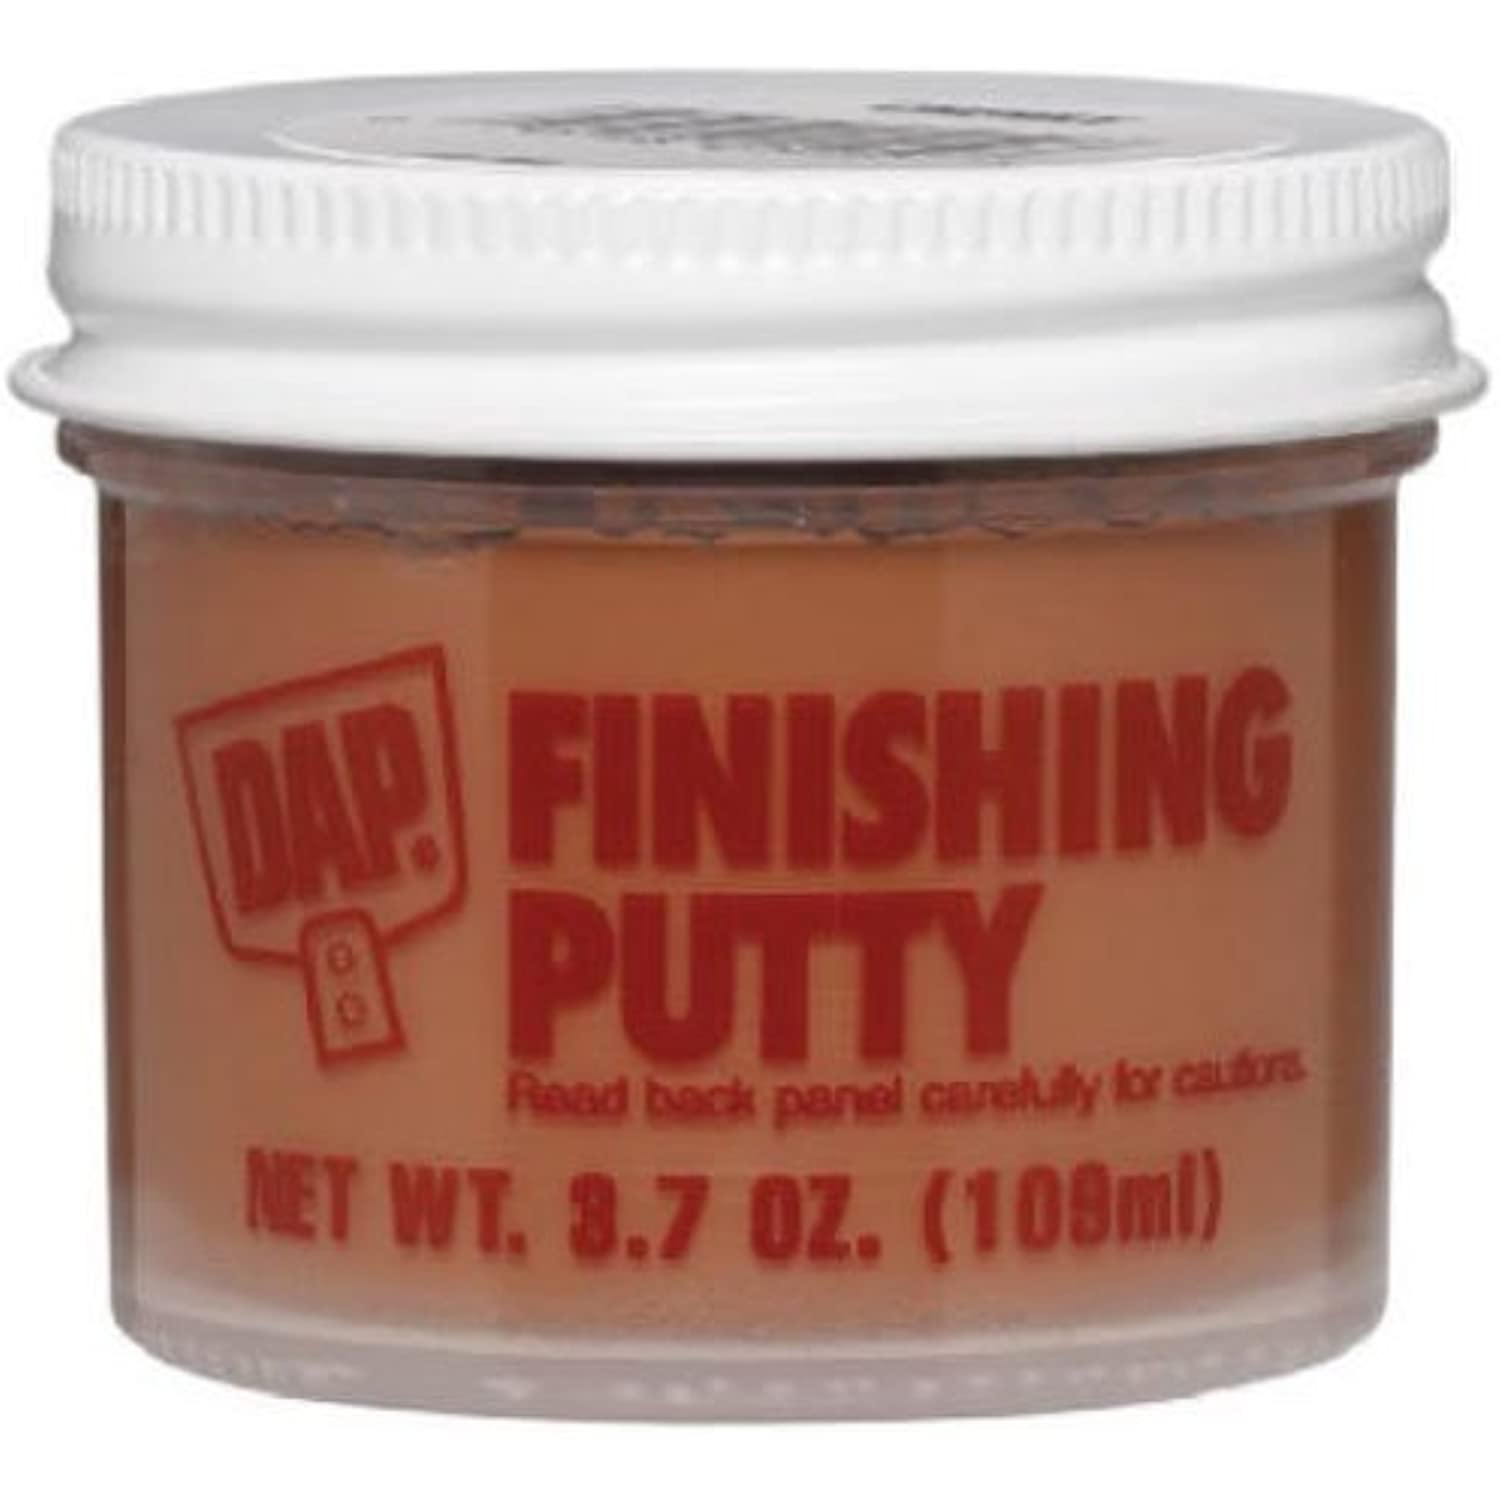 DAP 7079821276 NAT 3.7 Oz Finishing Putty, Natural Oak